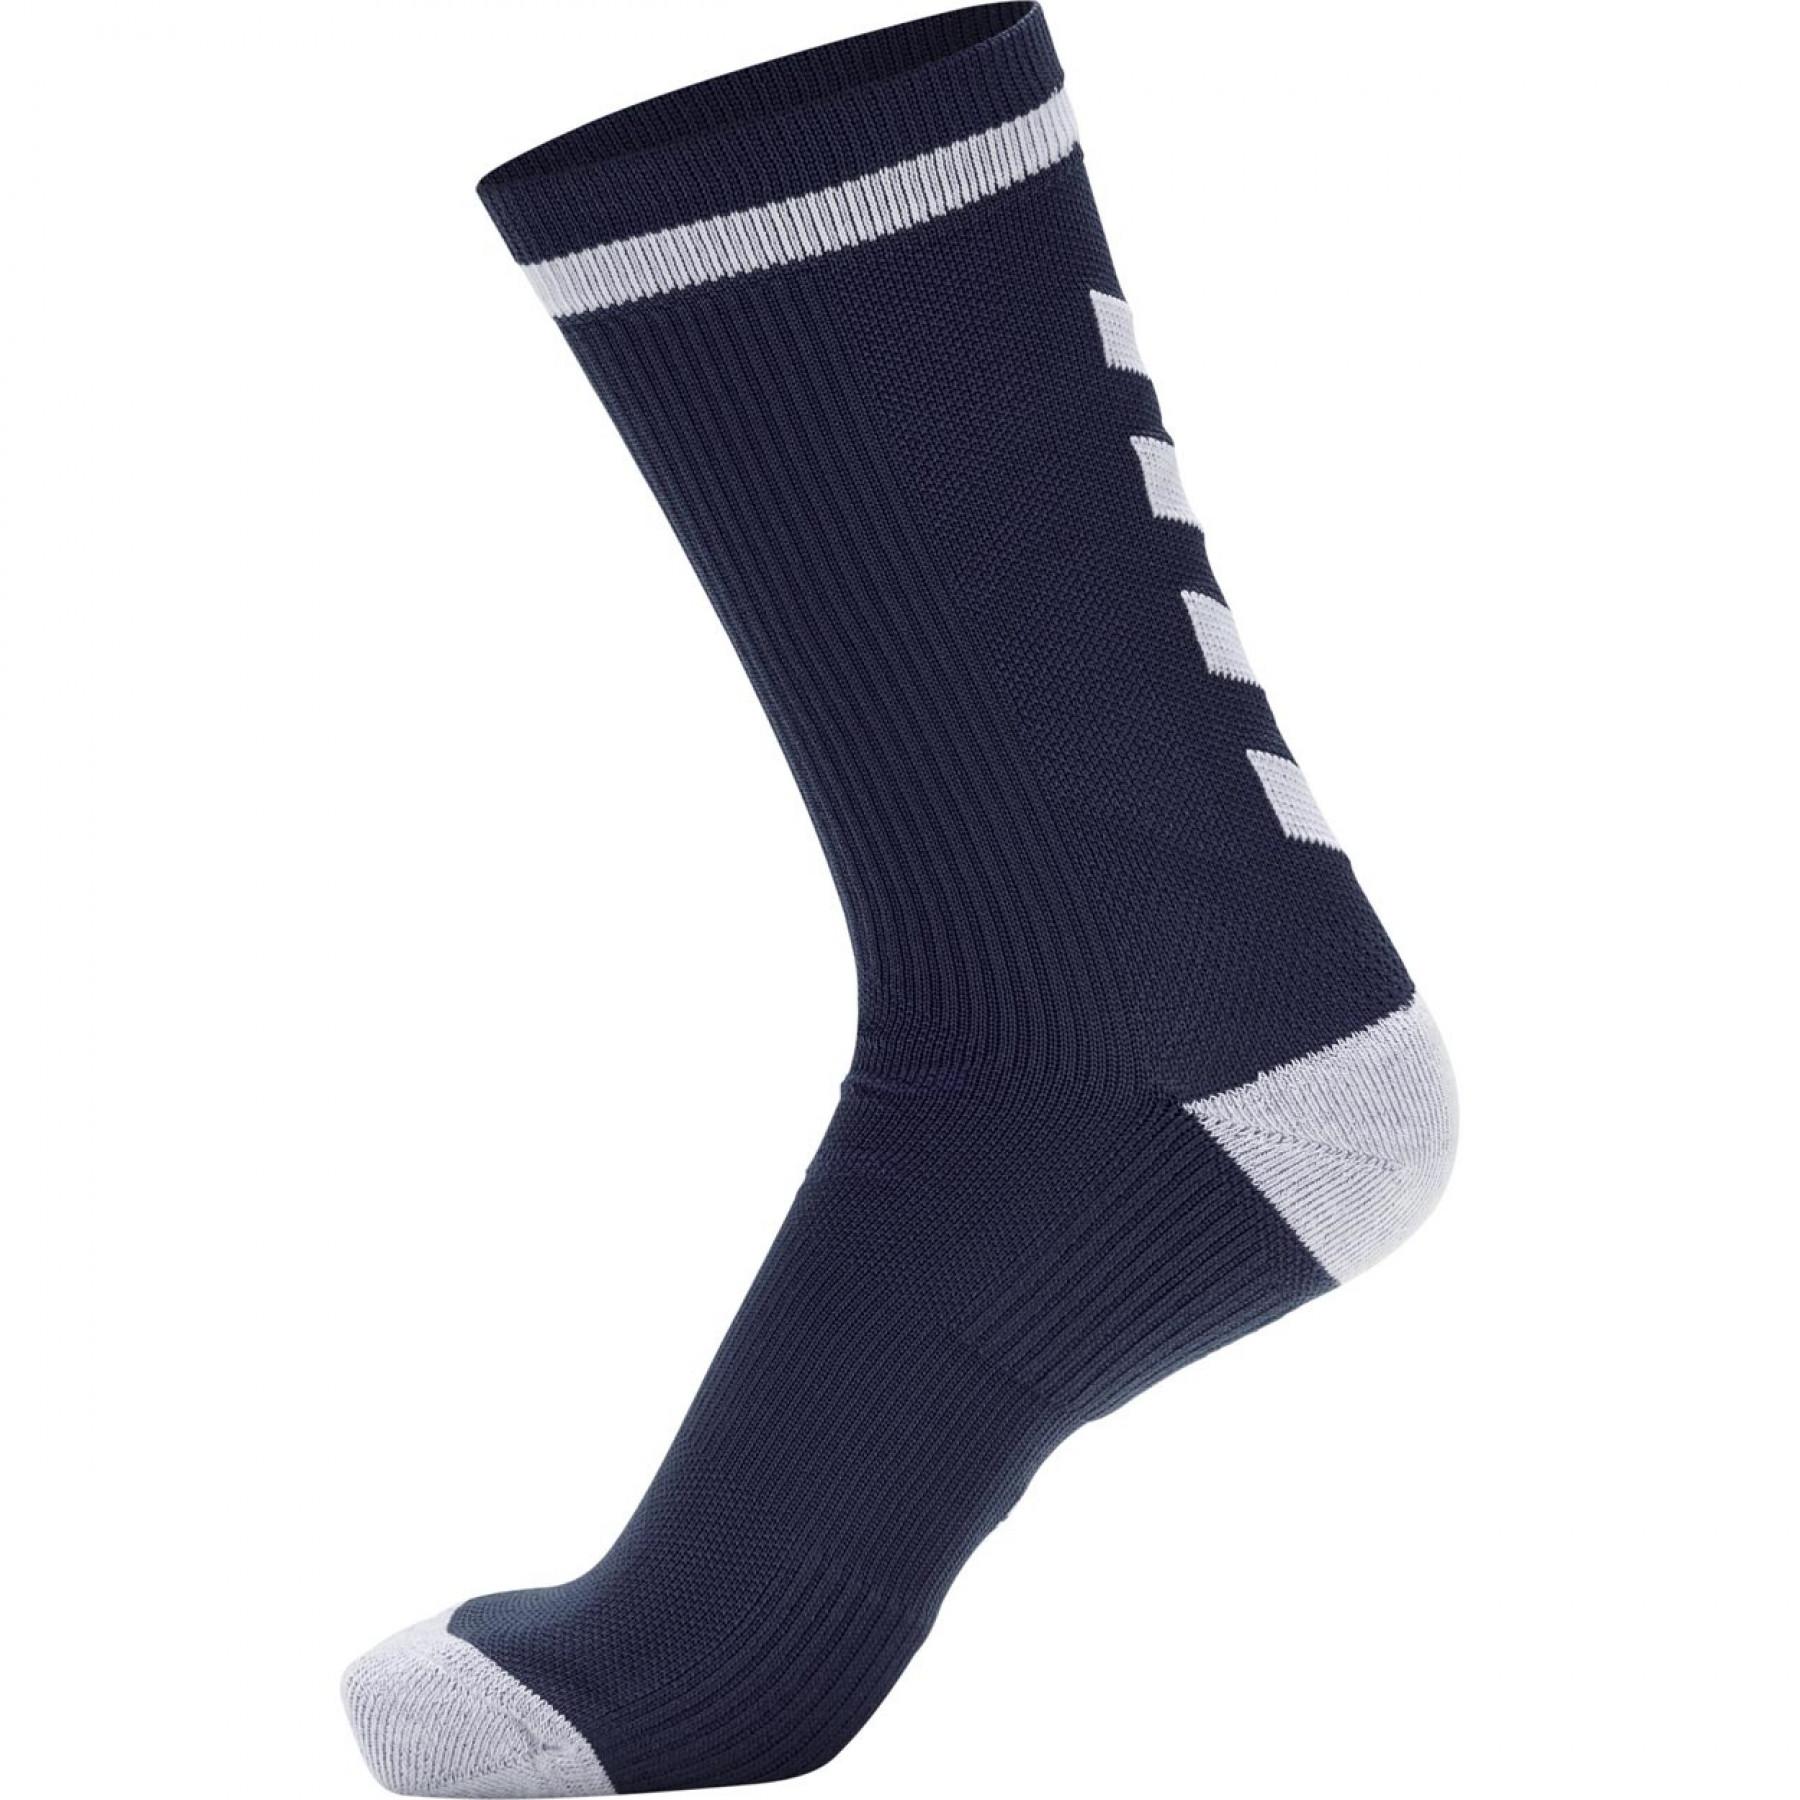 Paquete de 5 pares de calcetines de color claro Hummel Elite Indoor high -  Calcetines - Ropa - Ropa